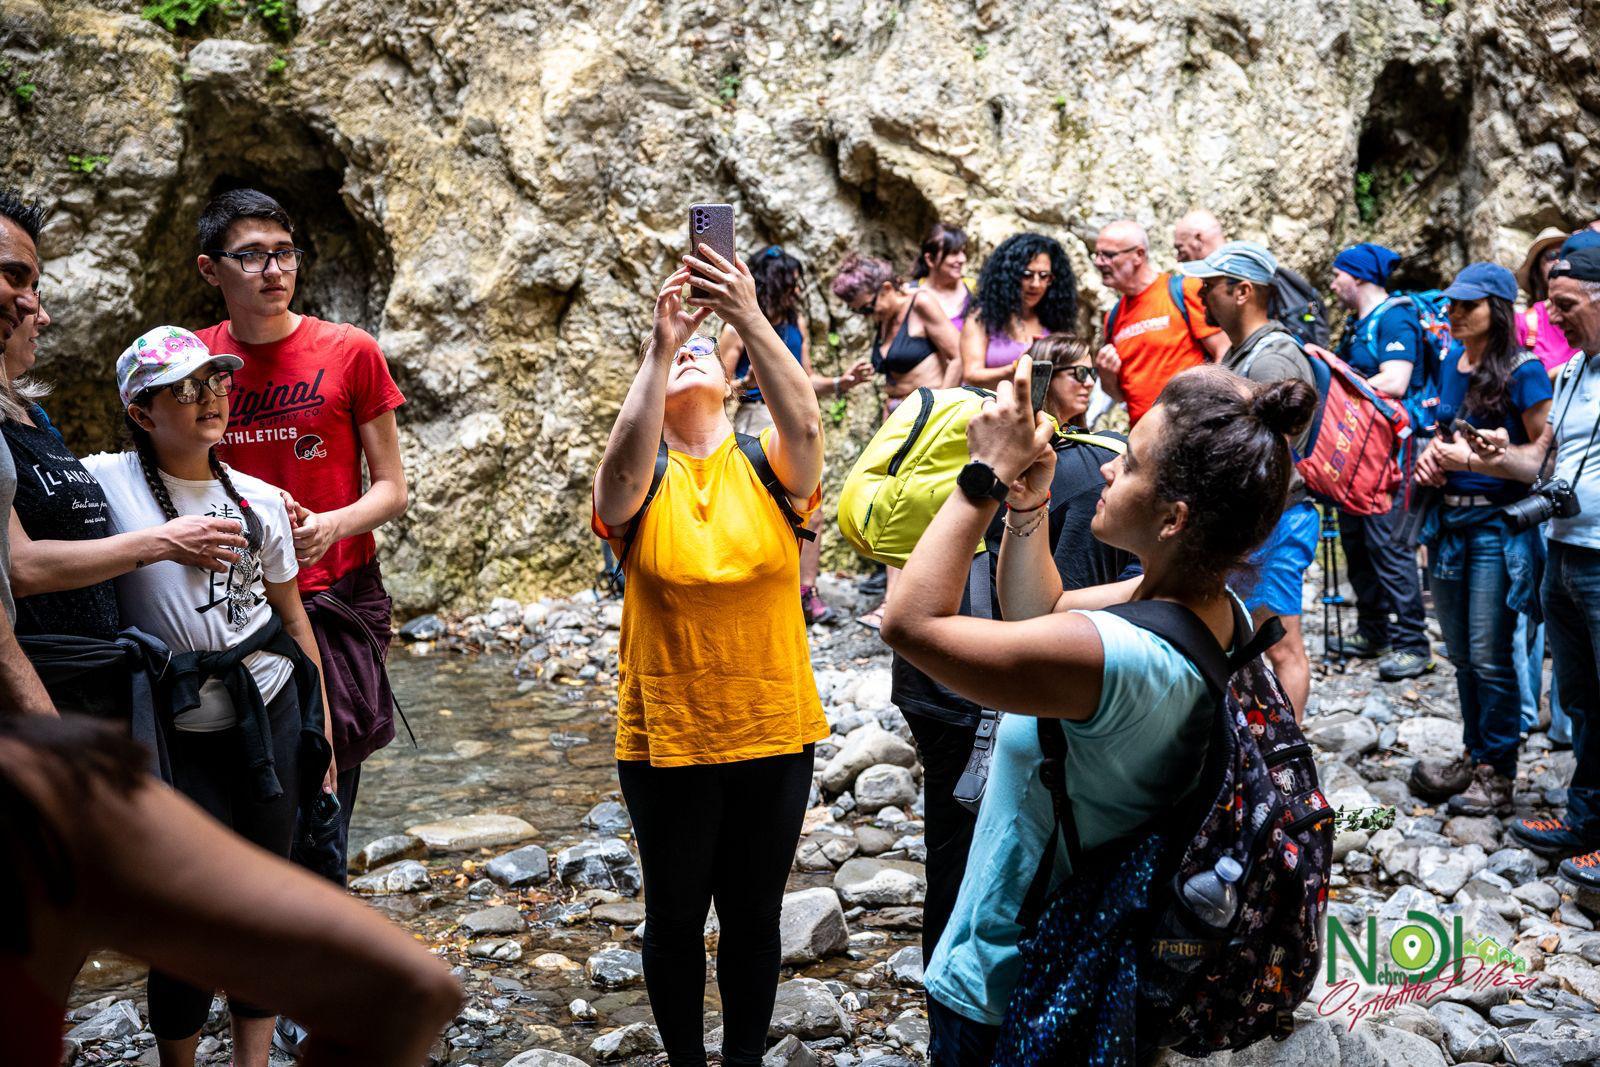 Nebrodi Ospitalità Diffusa, grande successo per la due giorni di trekking, sindaco Grasso (Capri Leone): “Oltre 300 iscritti. Ci saranno tante altre novità durante l’anno”